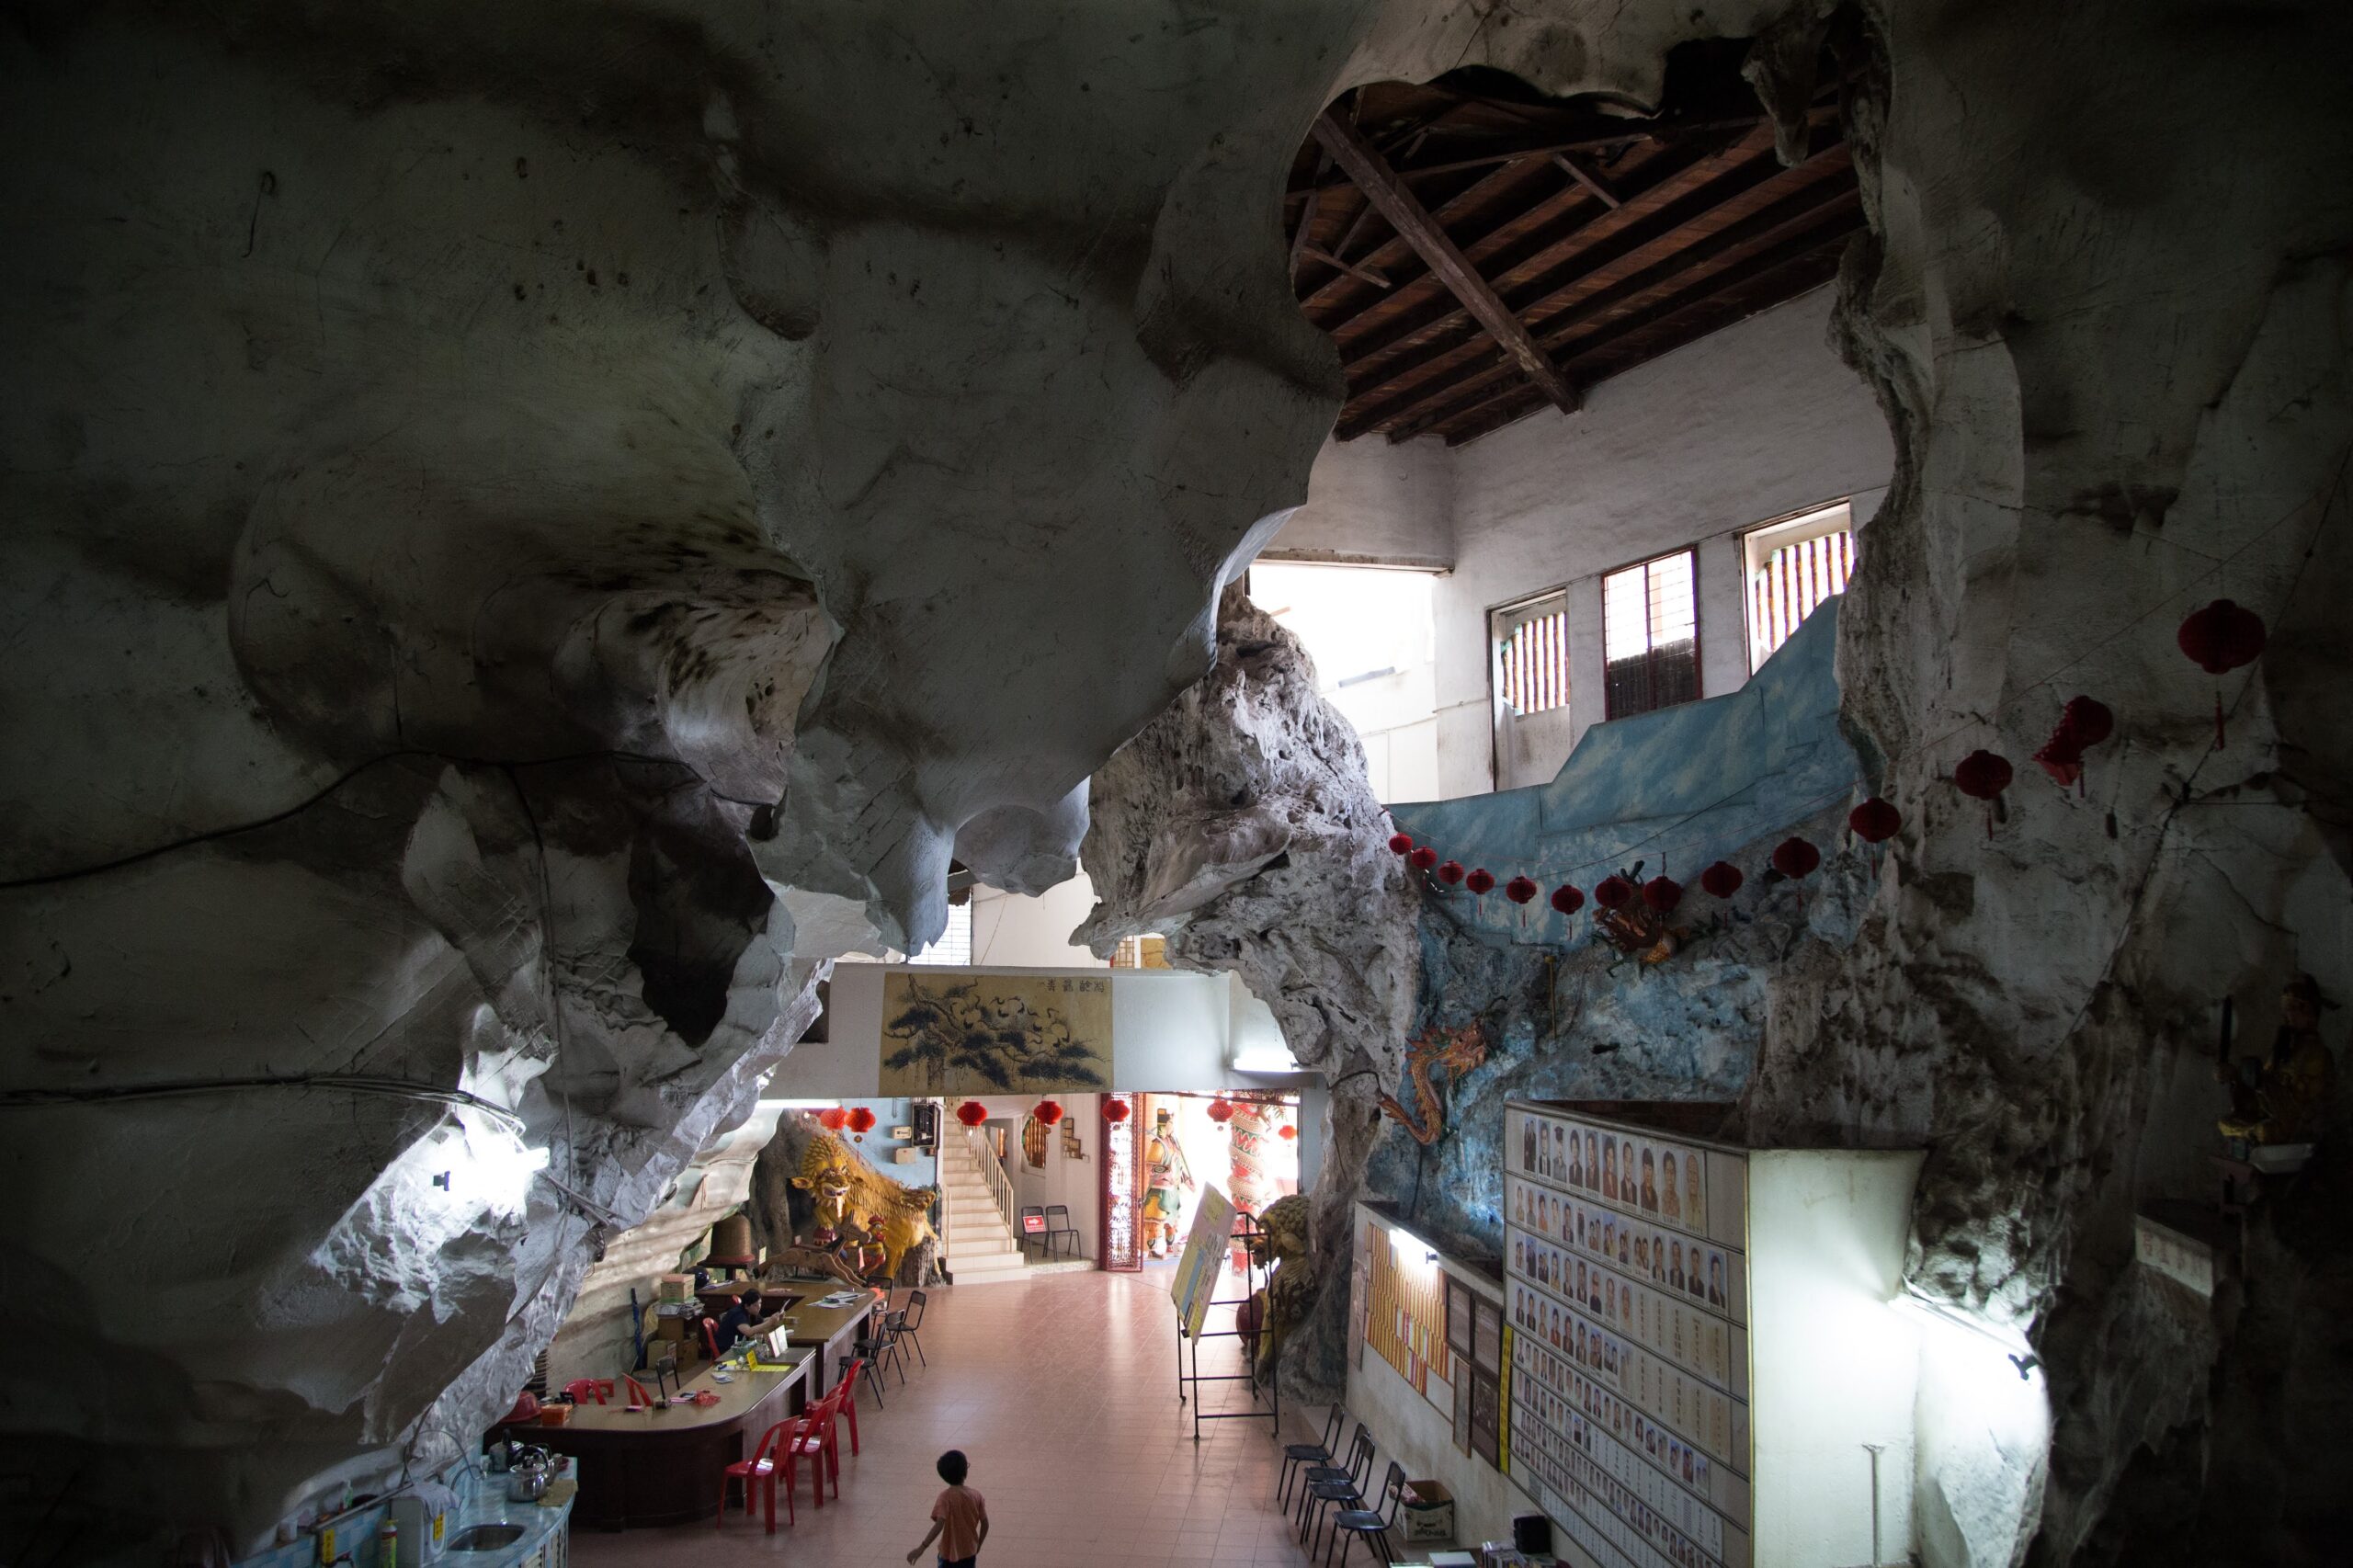 Nam Thean Tong cave temple in Perak